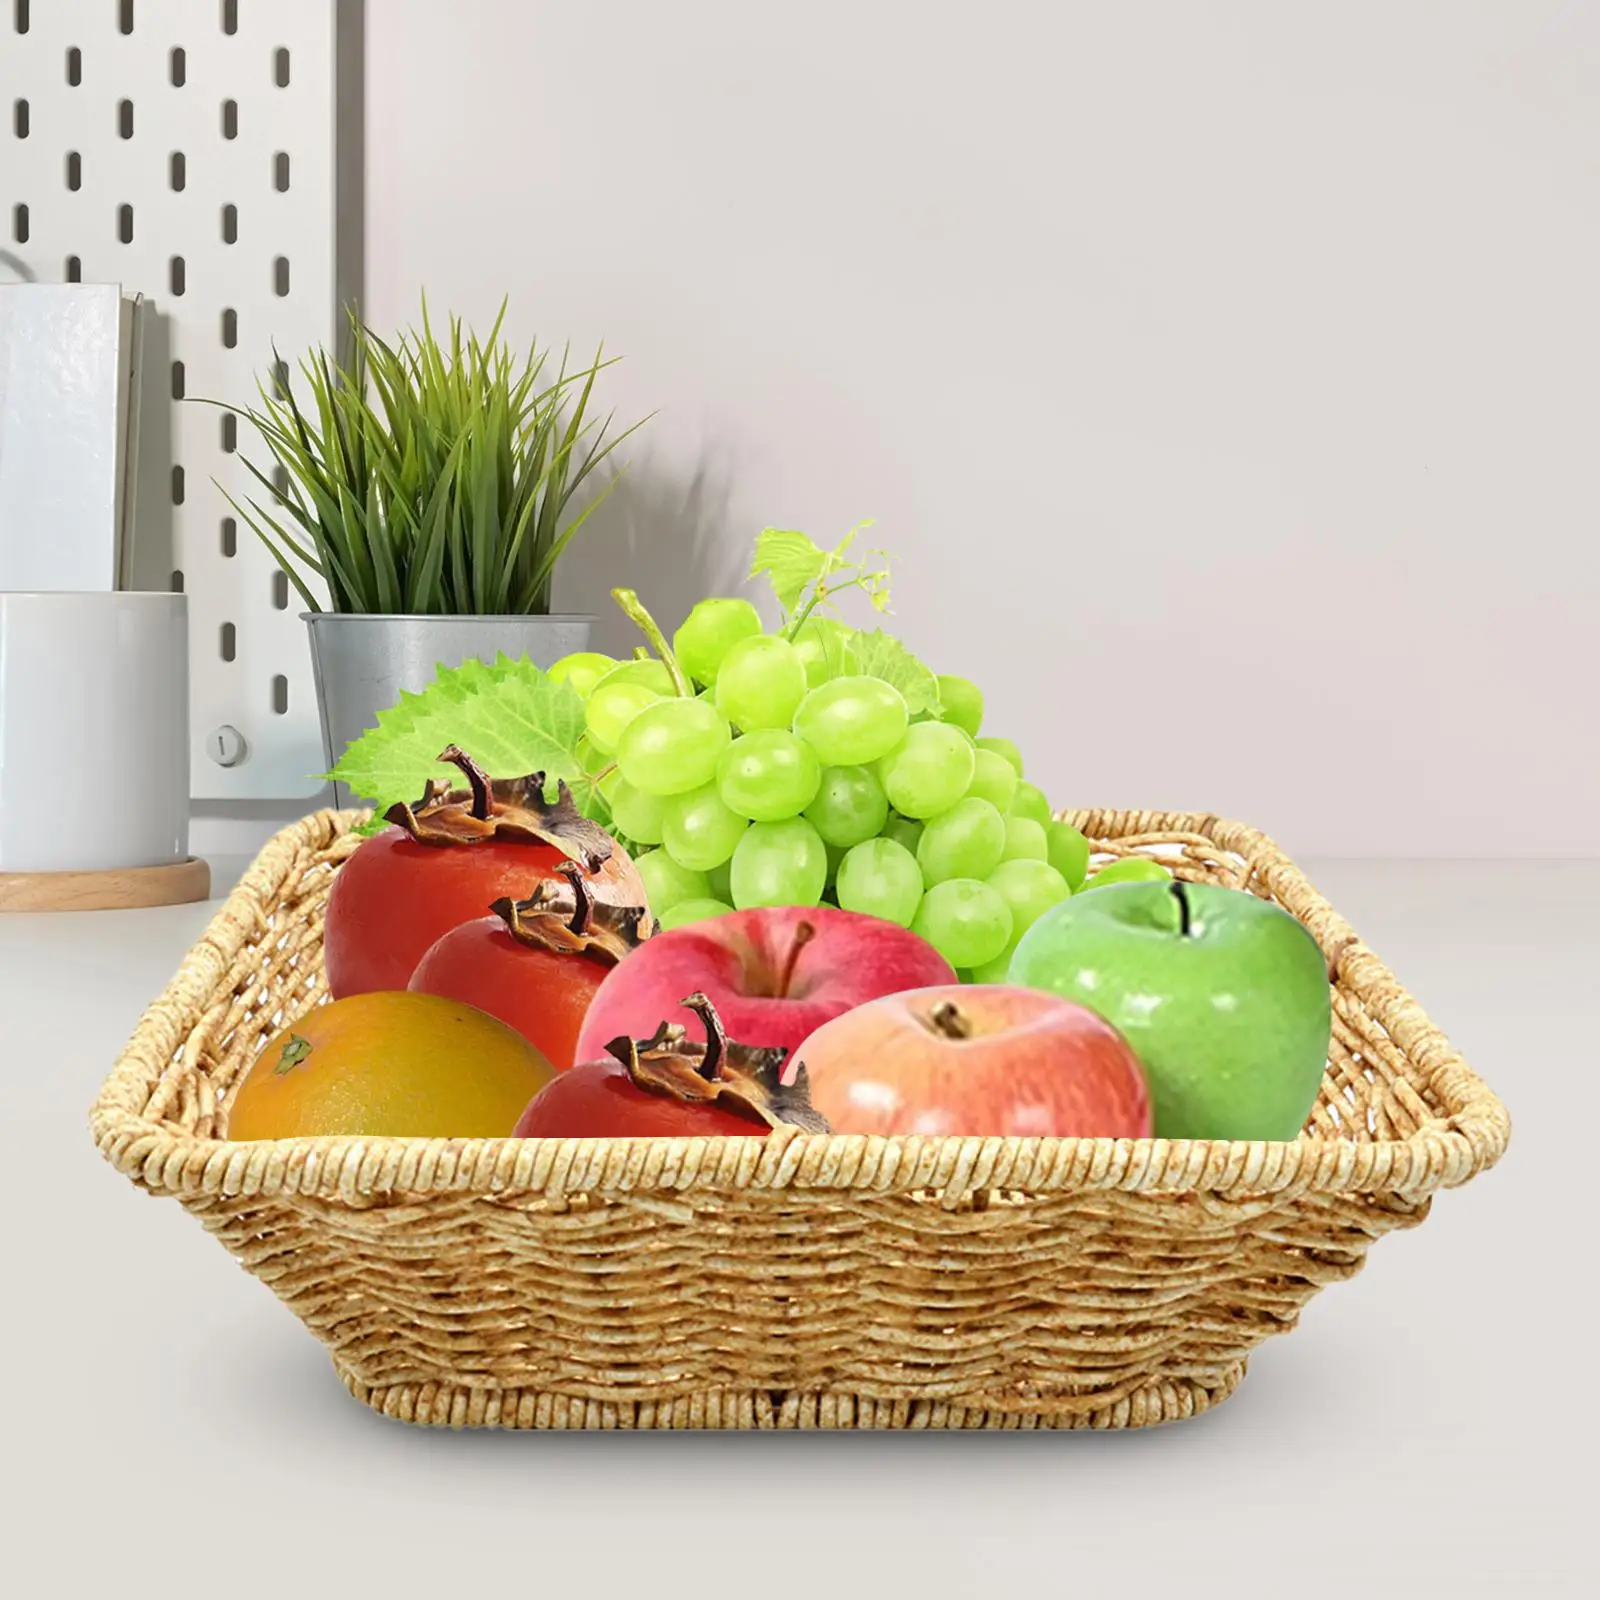 Woven Basket Bowl Food Vegetables Serving Basket for Bedroom Bathroom Party